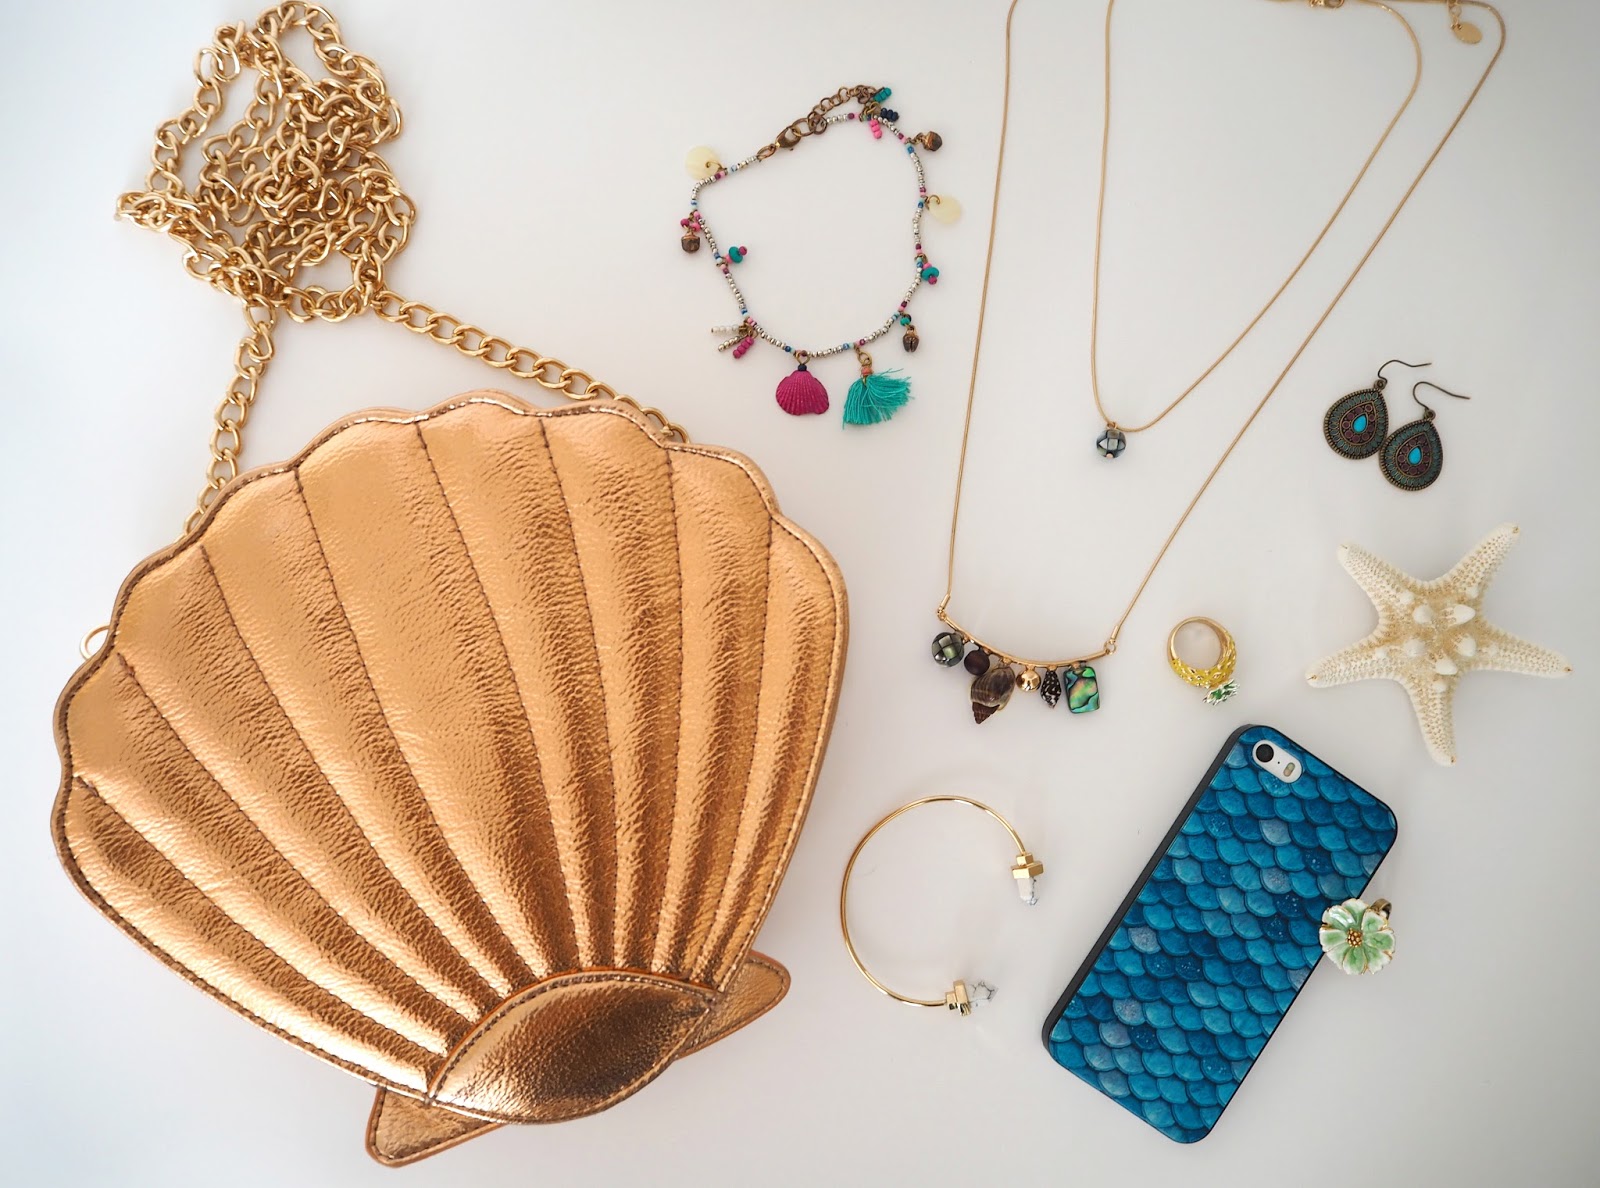 Mermaid Accessories, Shell Accessories, Mermaid Jewellery, Mermaid Inspired Outfit, Mermaid Make Up Look, Little Mermaid Ariel Style | Katie Kirk Loves Blog